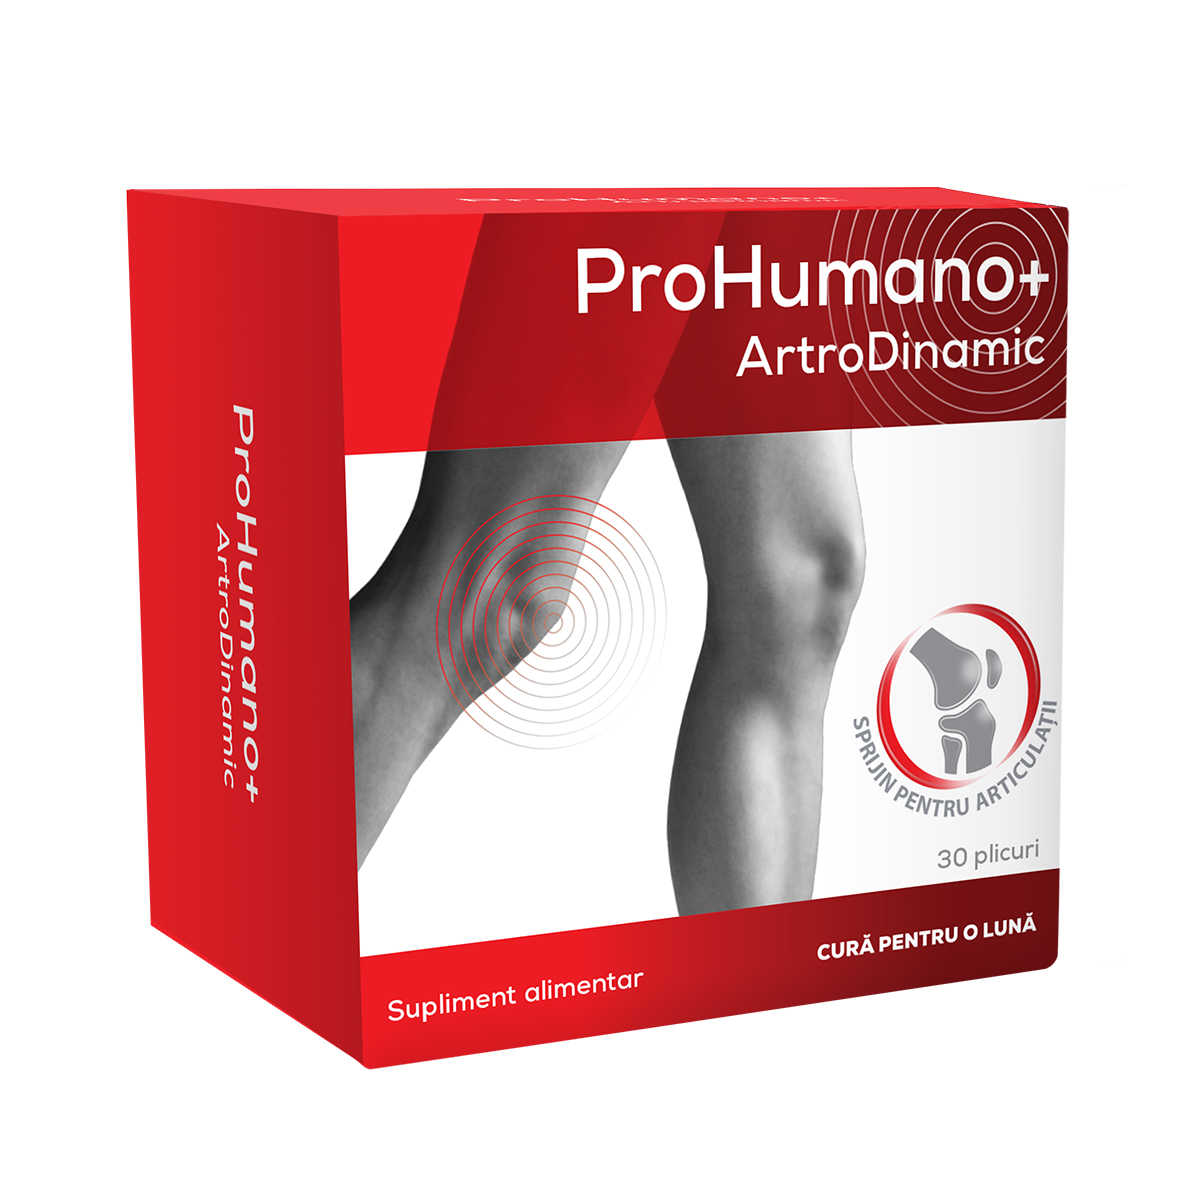 prohumano artrodinamic prospect 2 luni articulație la nivelul cotului